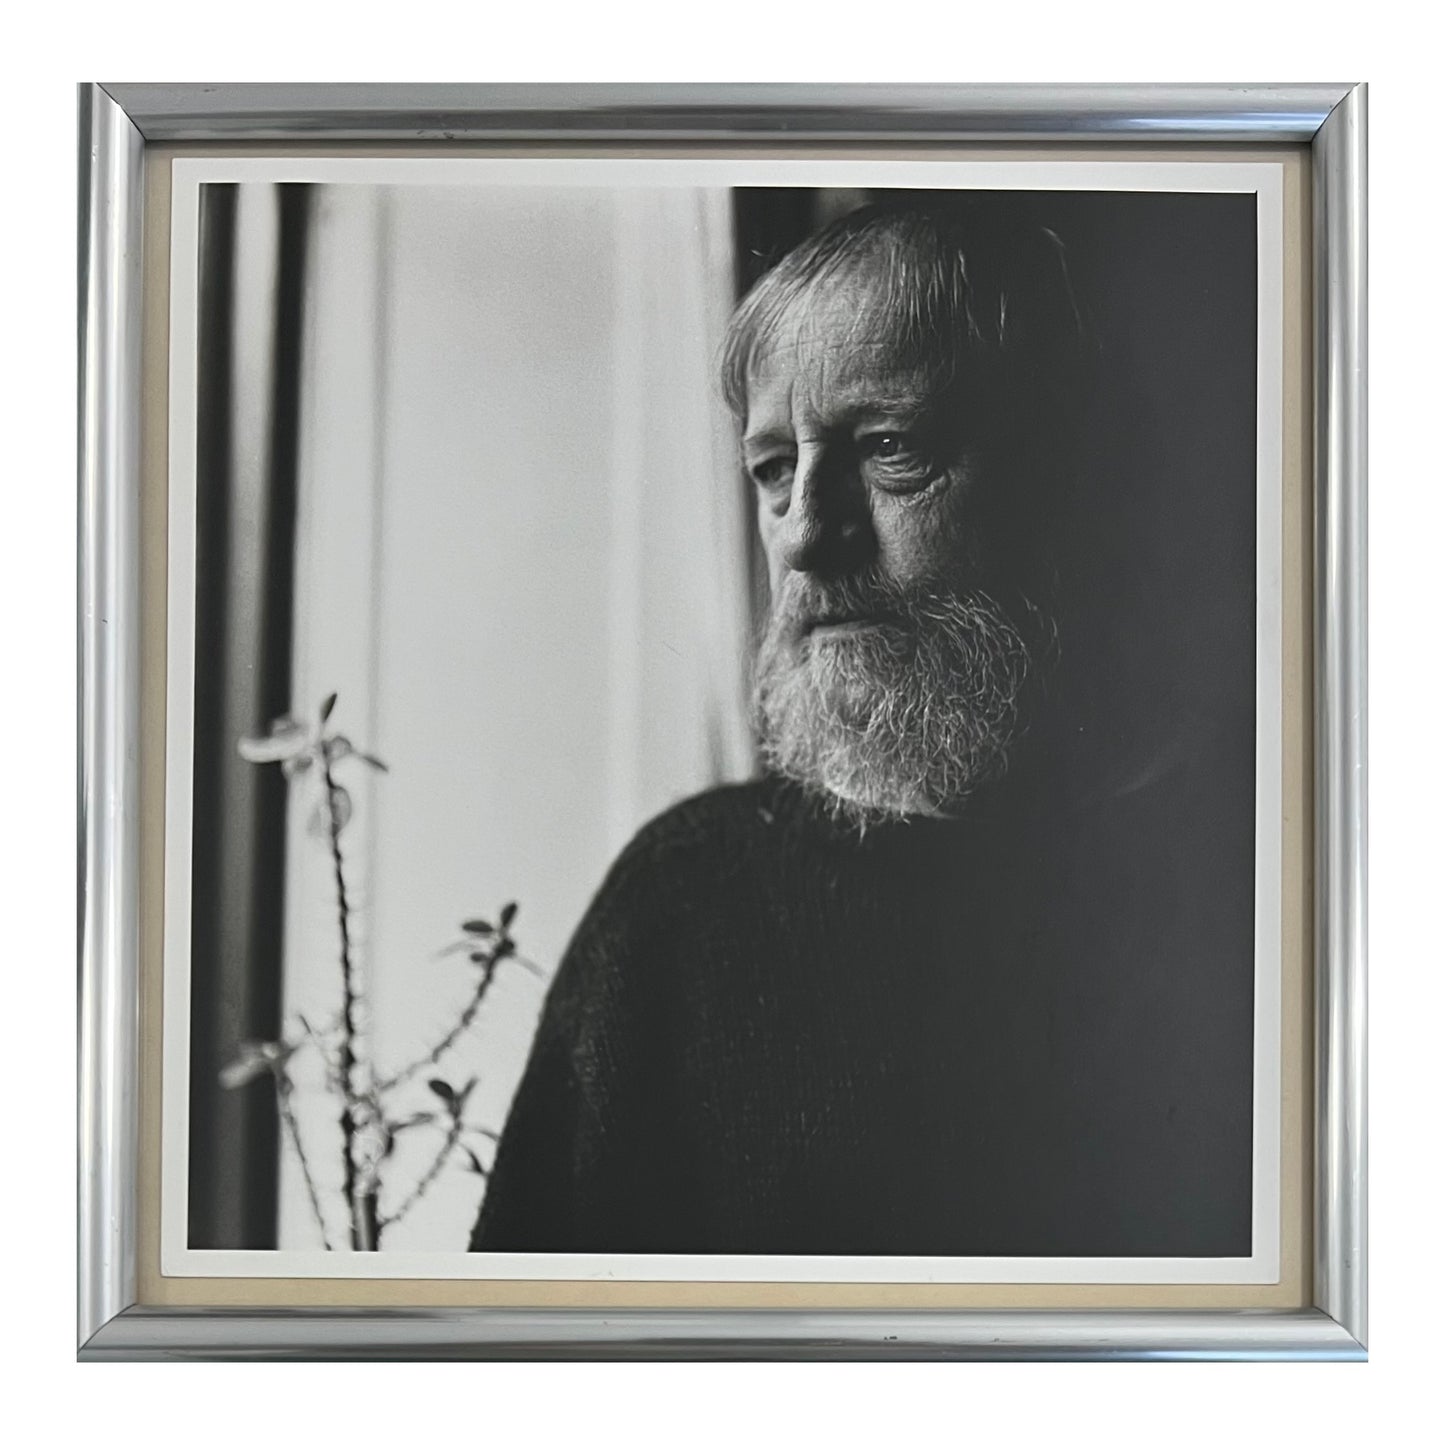 Lars Schwander. Portrait of Bent Stubbe Teglbjærg, 1992